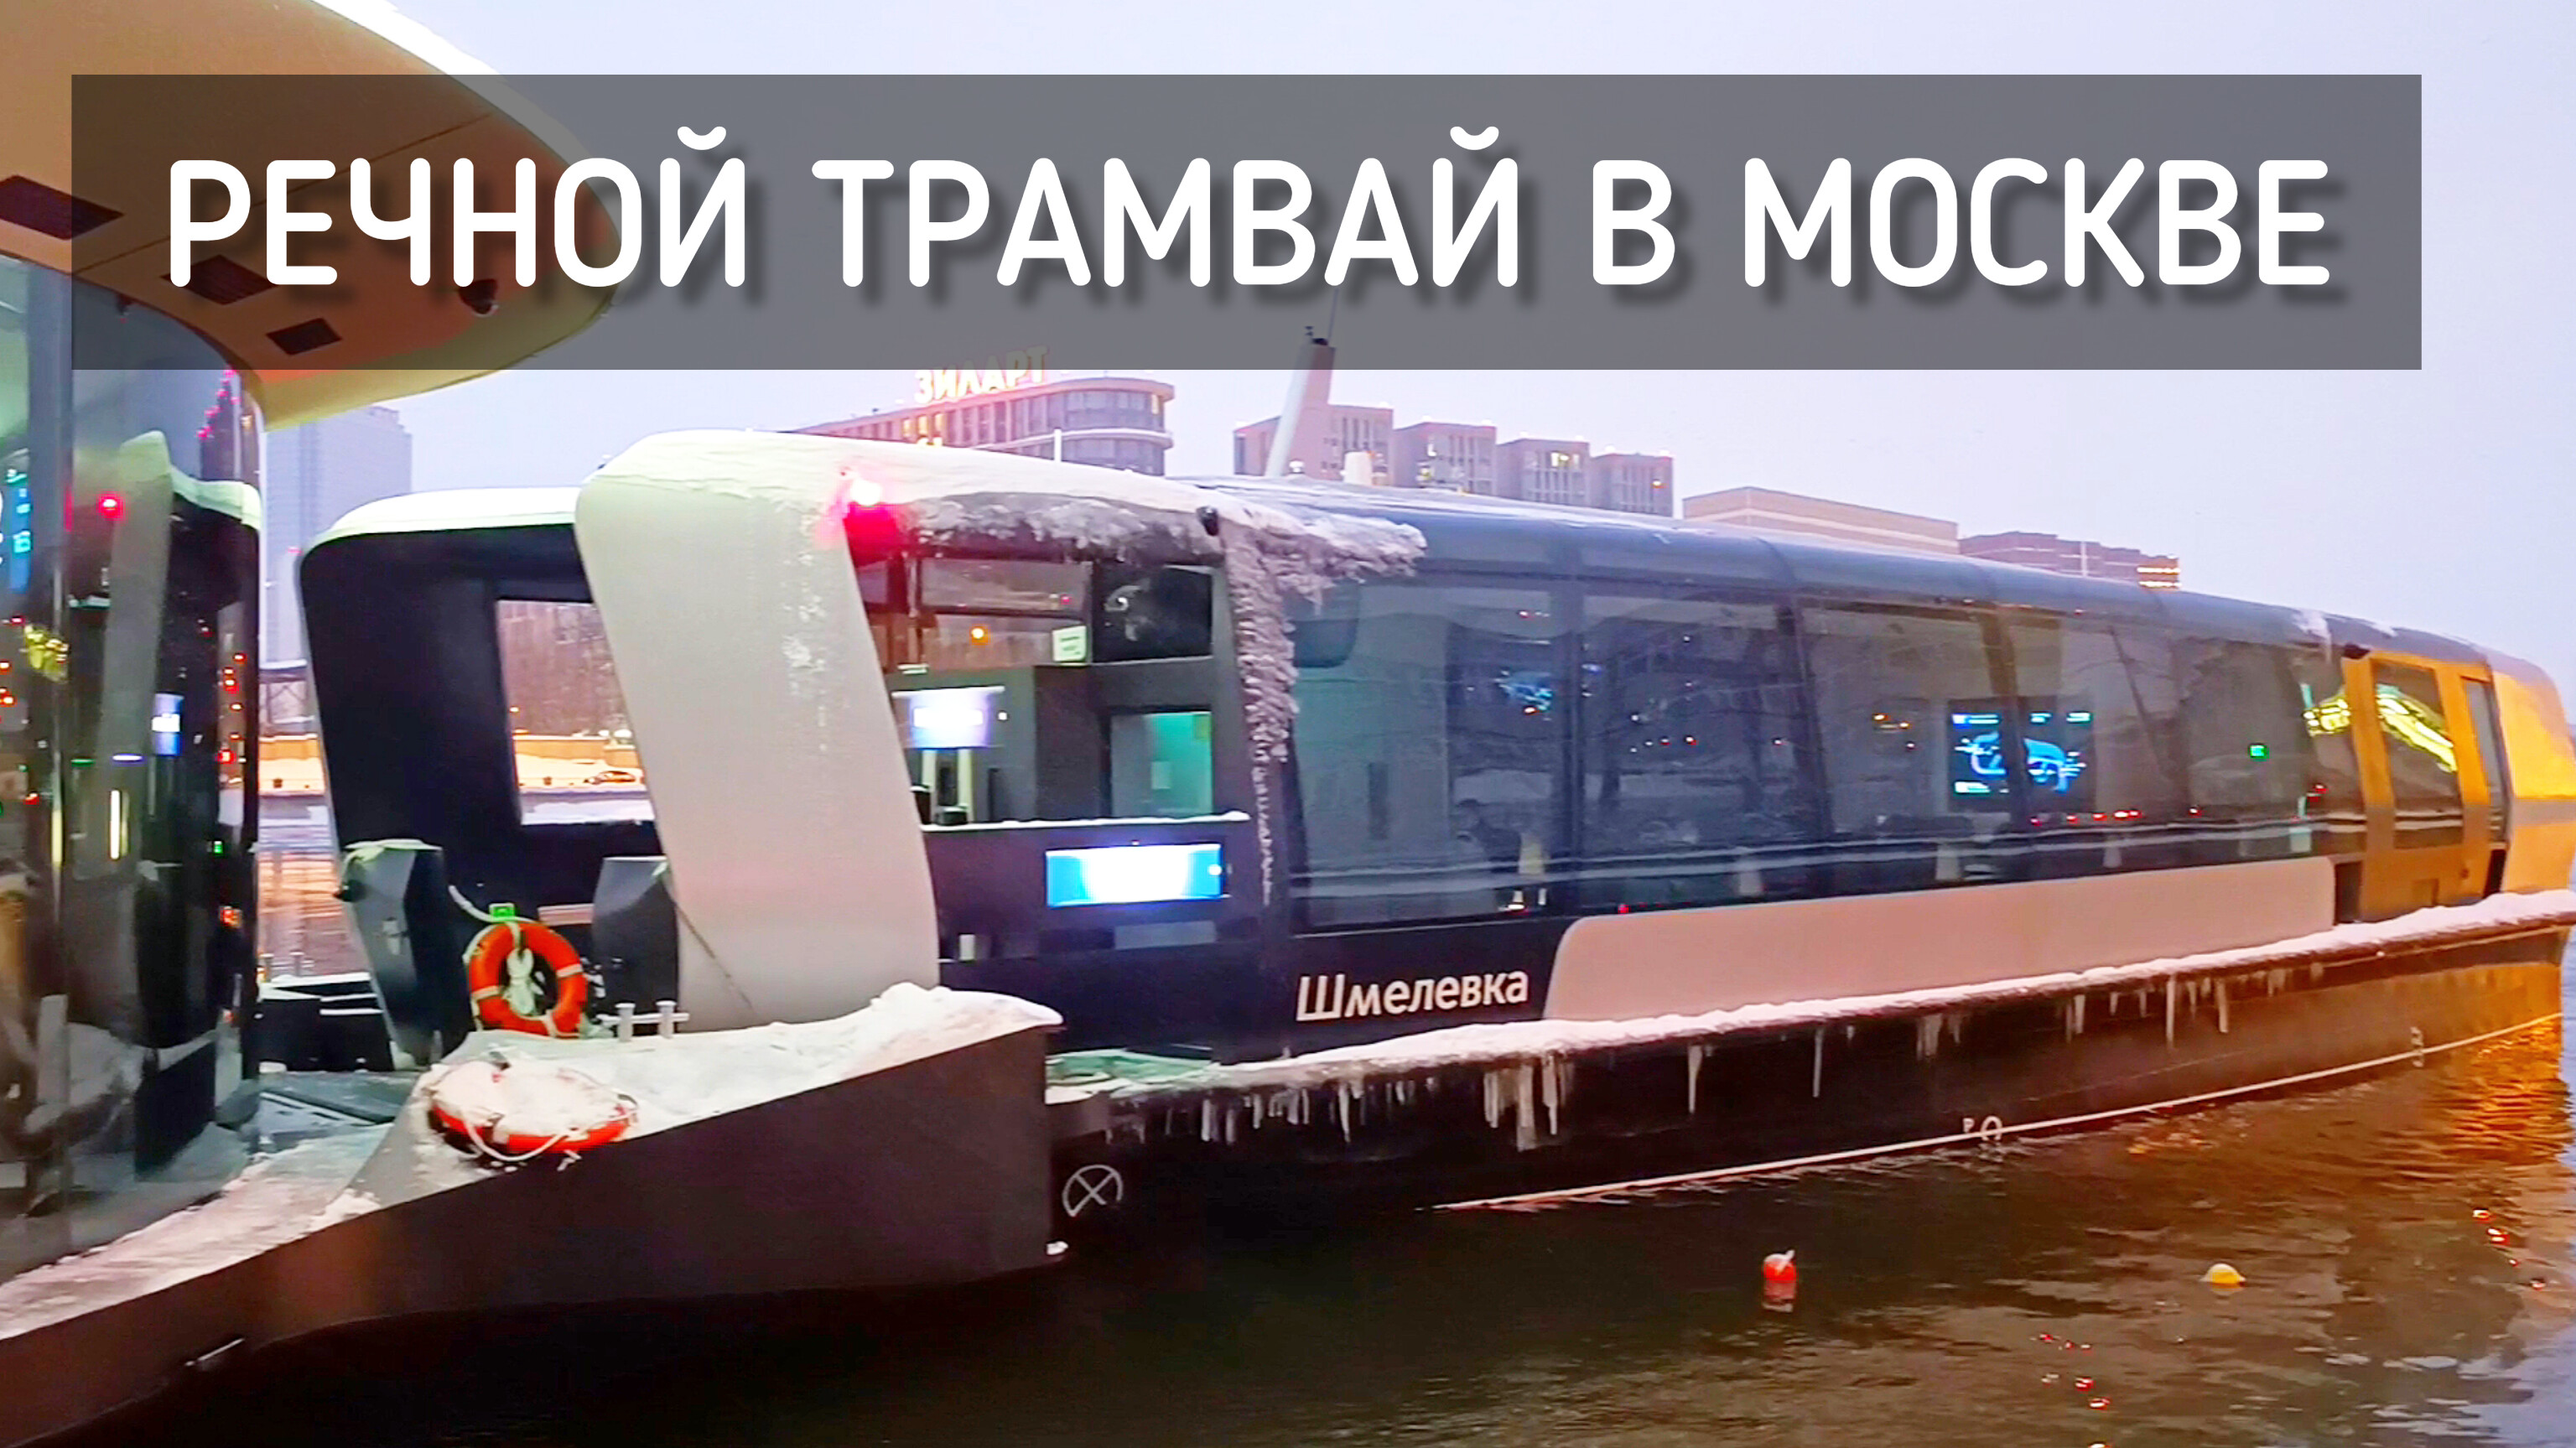 Речной трамвай в Москве. Катаемся зимой. Электротрамвай / Water tram in Moscow #москва #трамвай